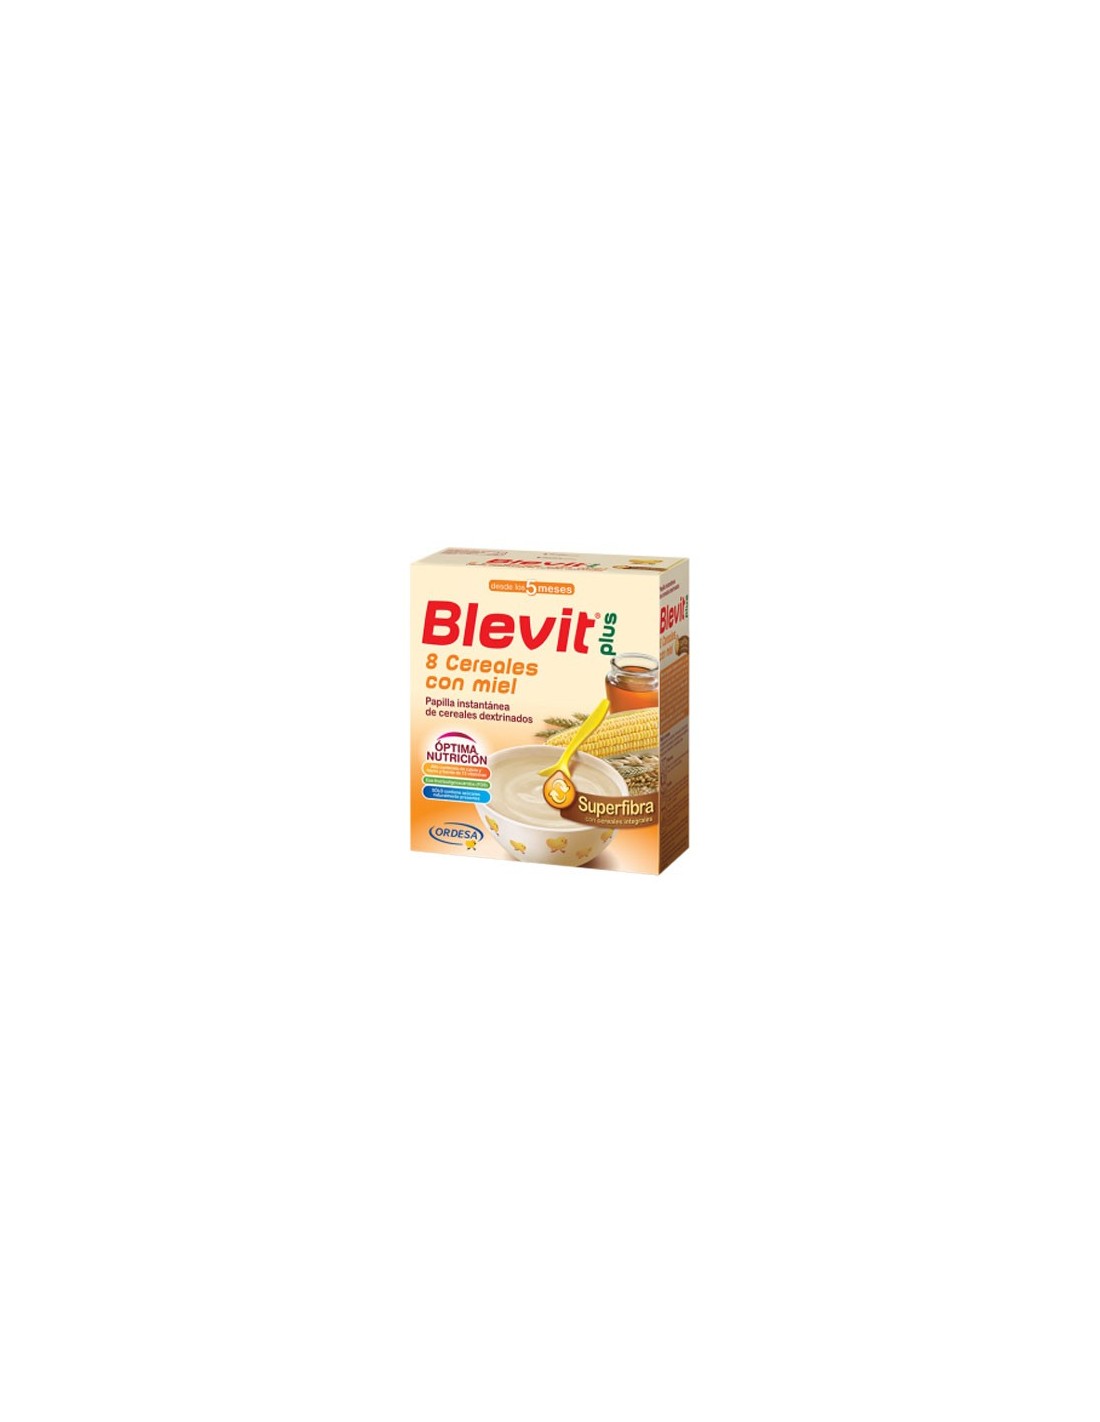 Blevit Plus Superfibra 8 Cereales Con Miel